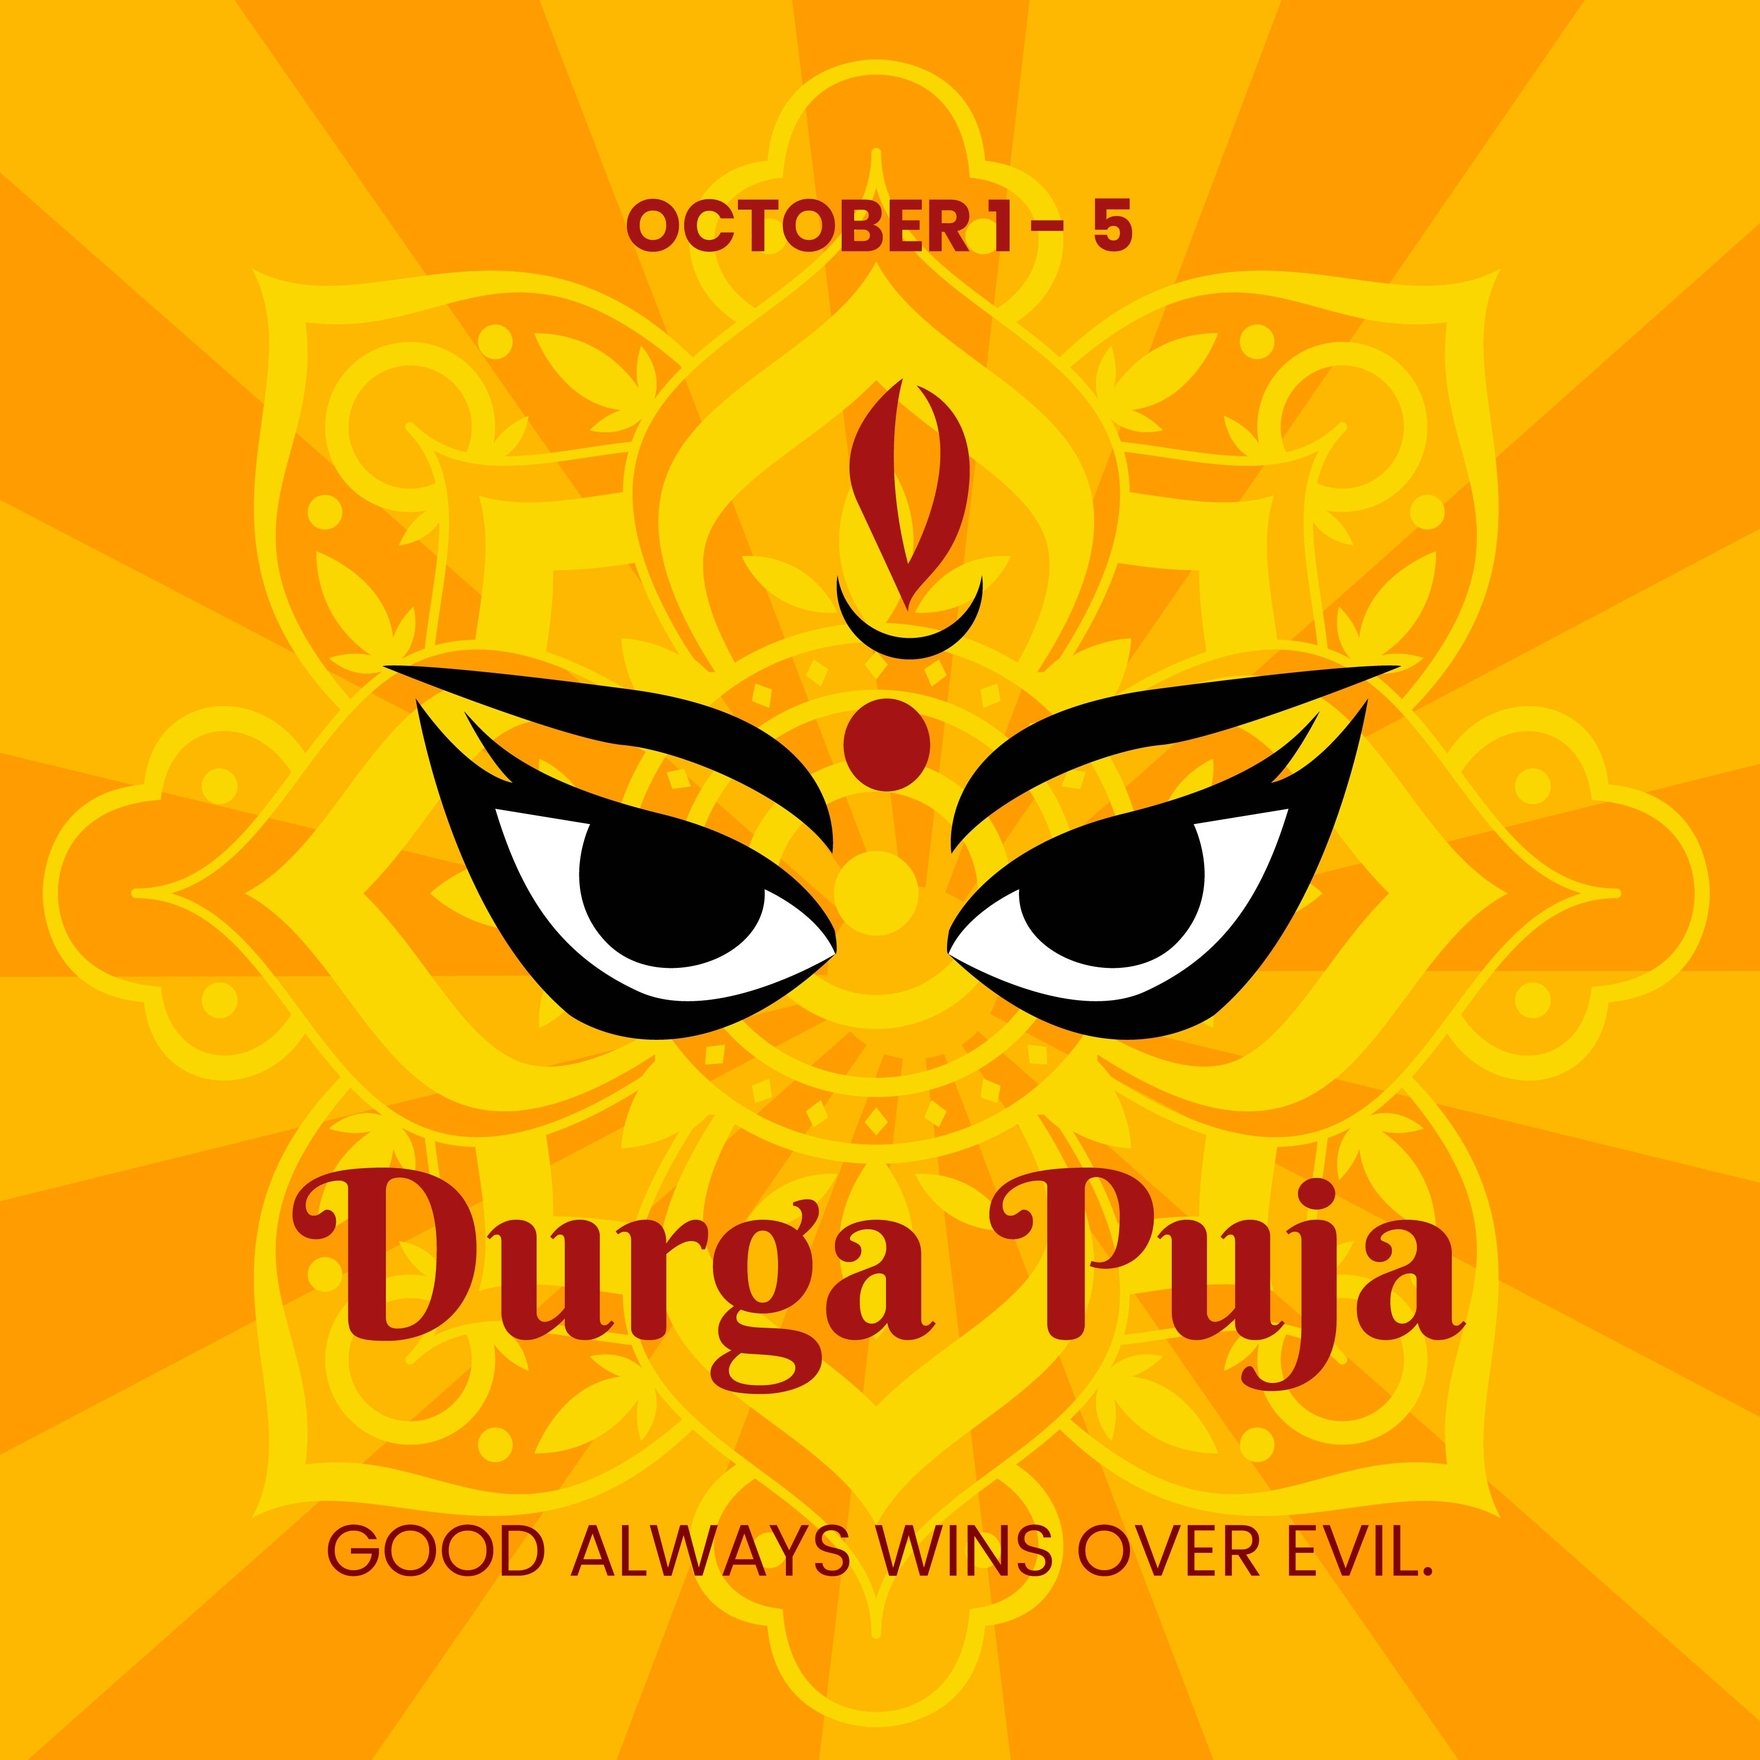 Durga Puja Instagram Post